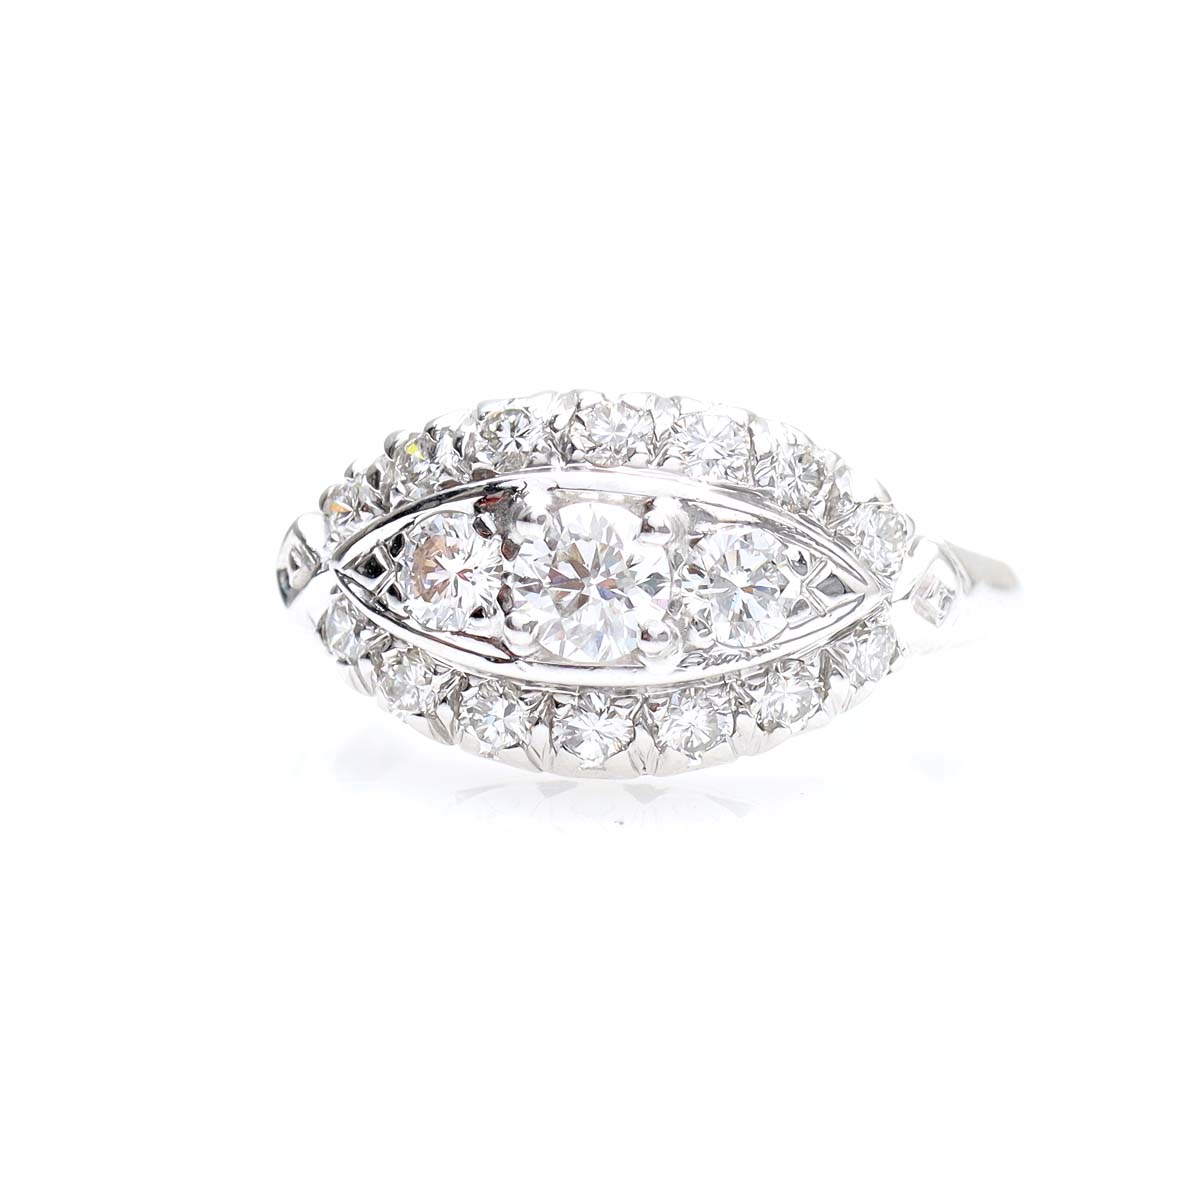 Circa 1950s Diamond Ring #VR150910-02 - Leigh Jay & Co